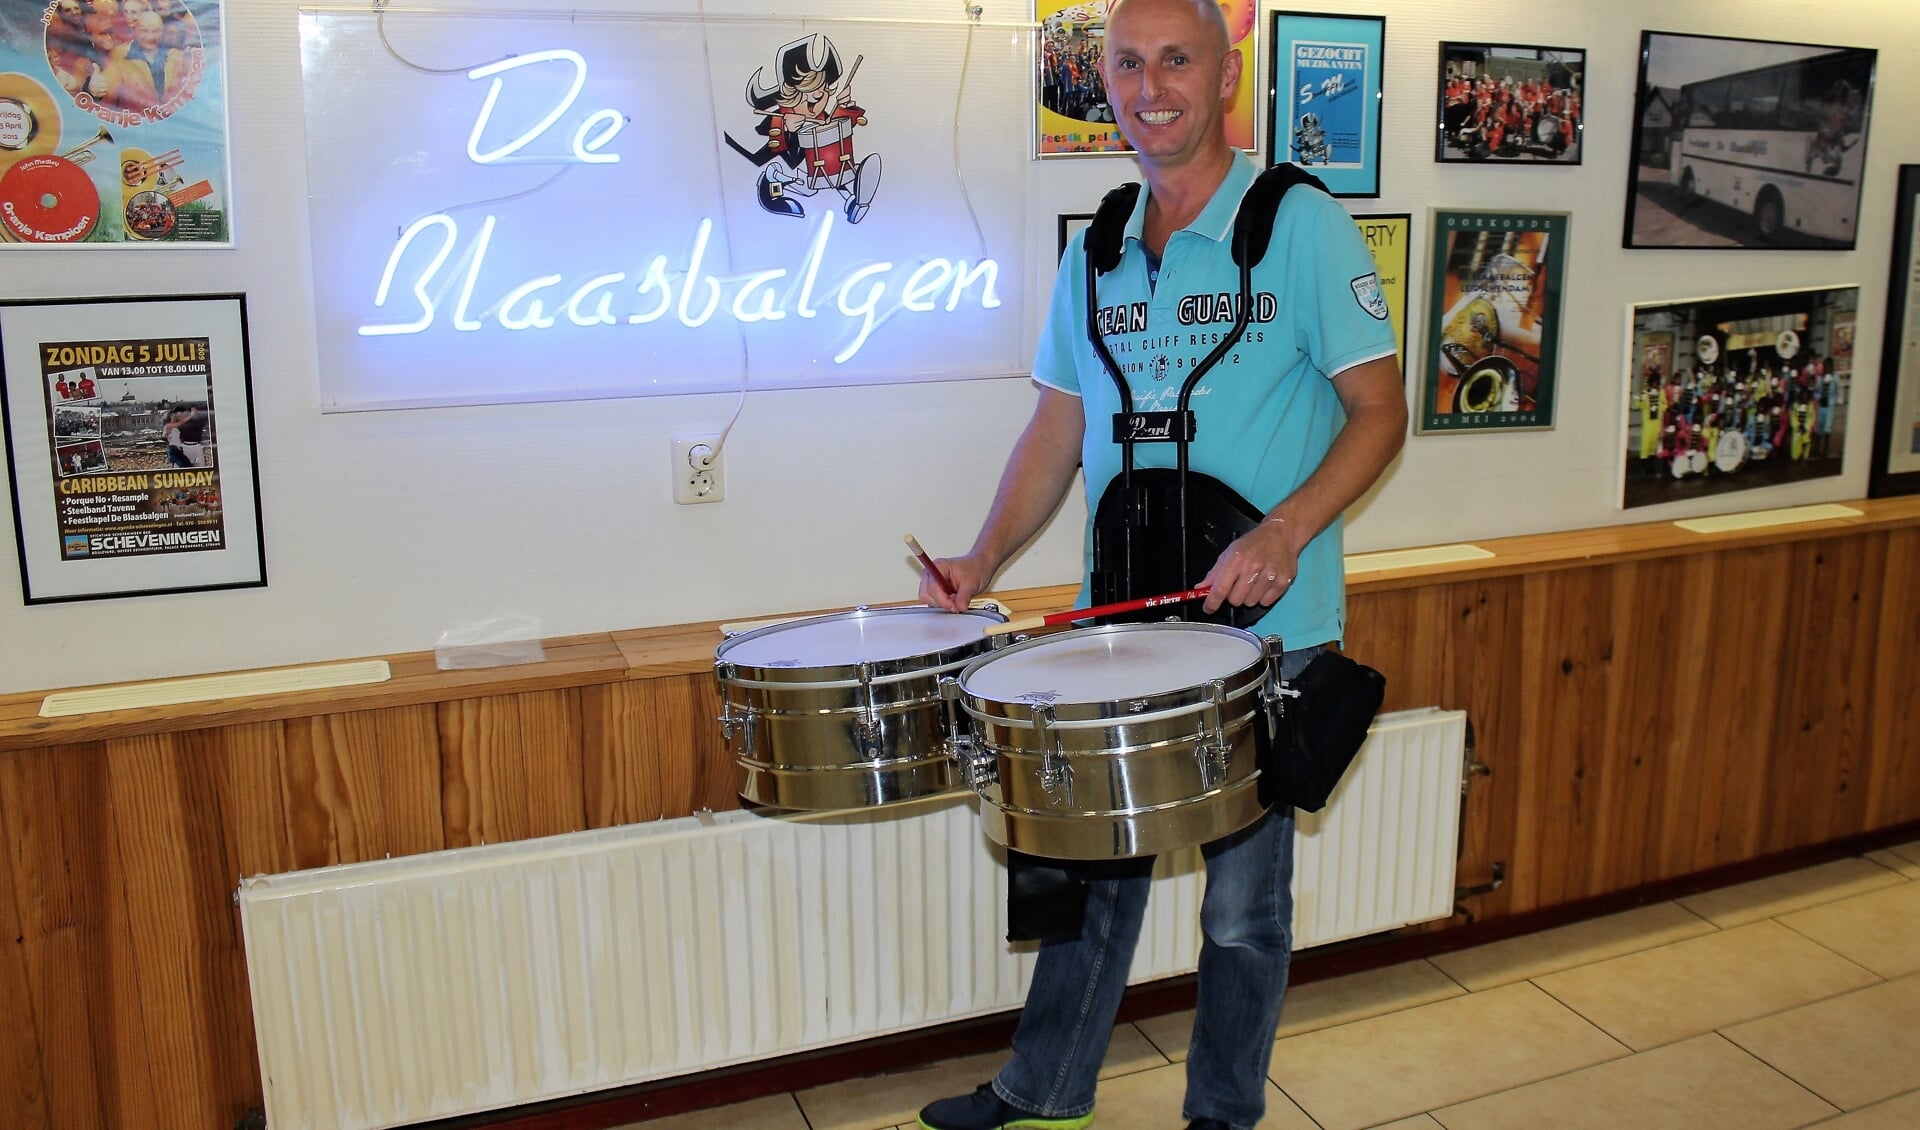 Bert Strijk, timbalist en manager van Feestkapel De Blaasbalgen (foto/tekst: DJ).